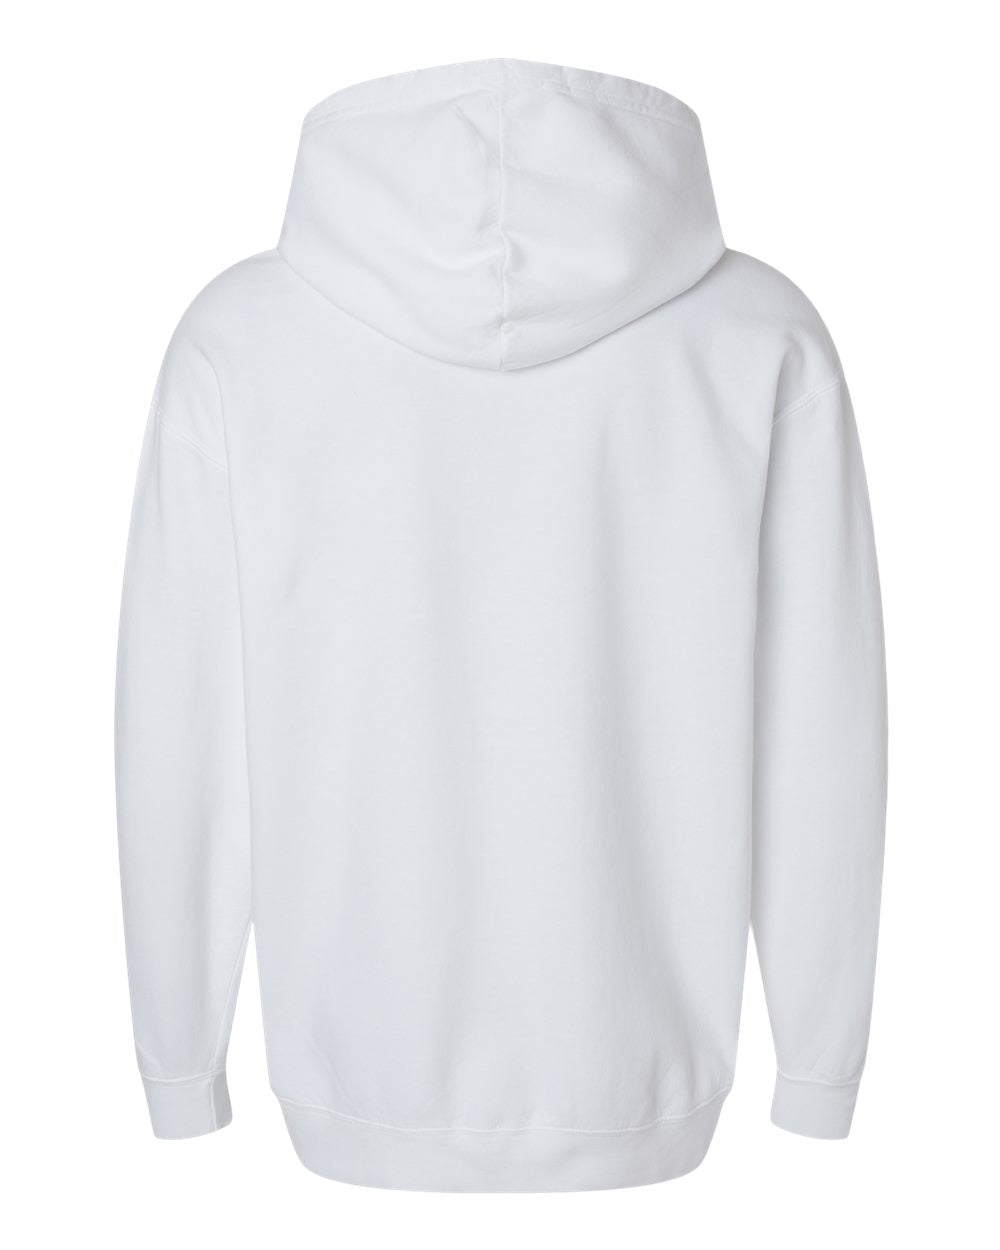 New Comfort Colors - Lightweight Fleece Hooded Sweatshirt - 1467